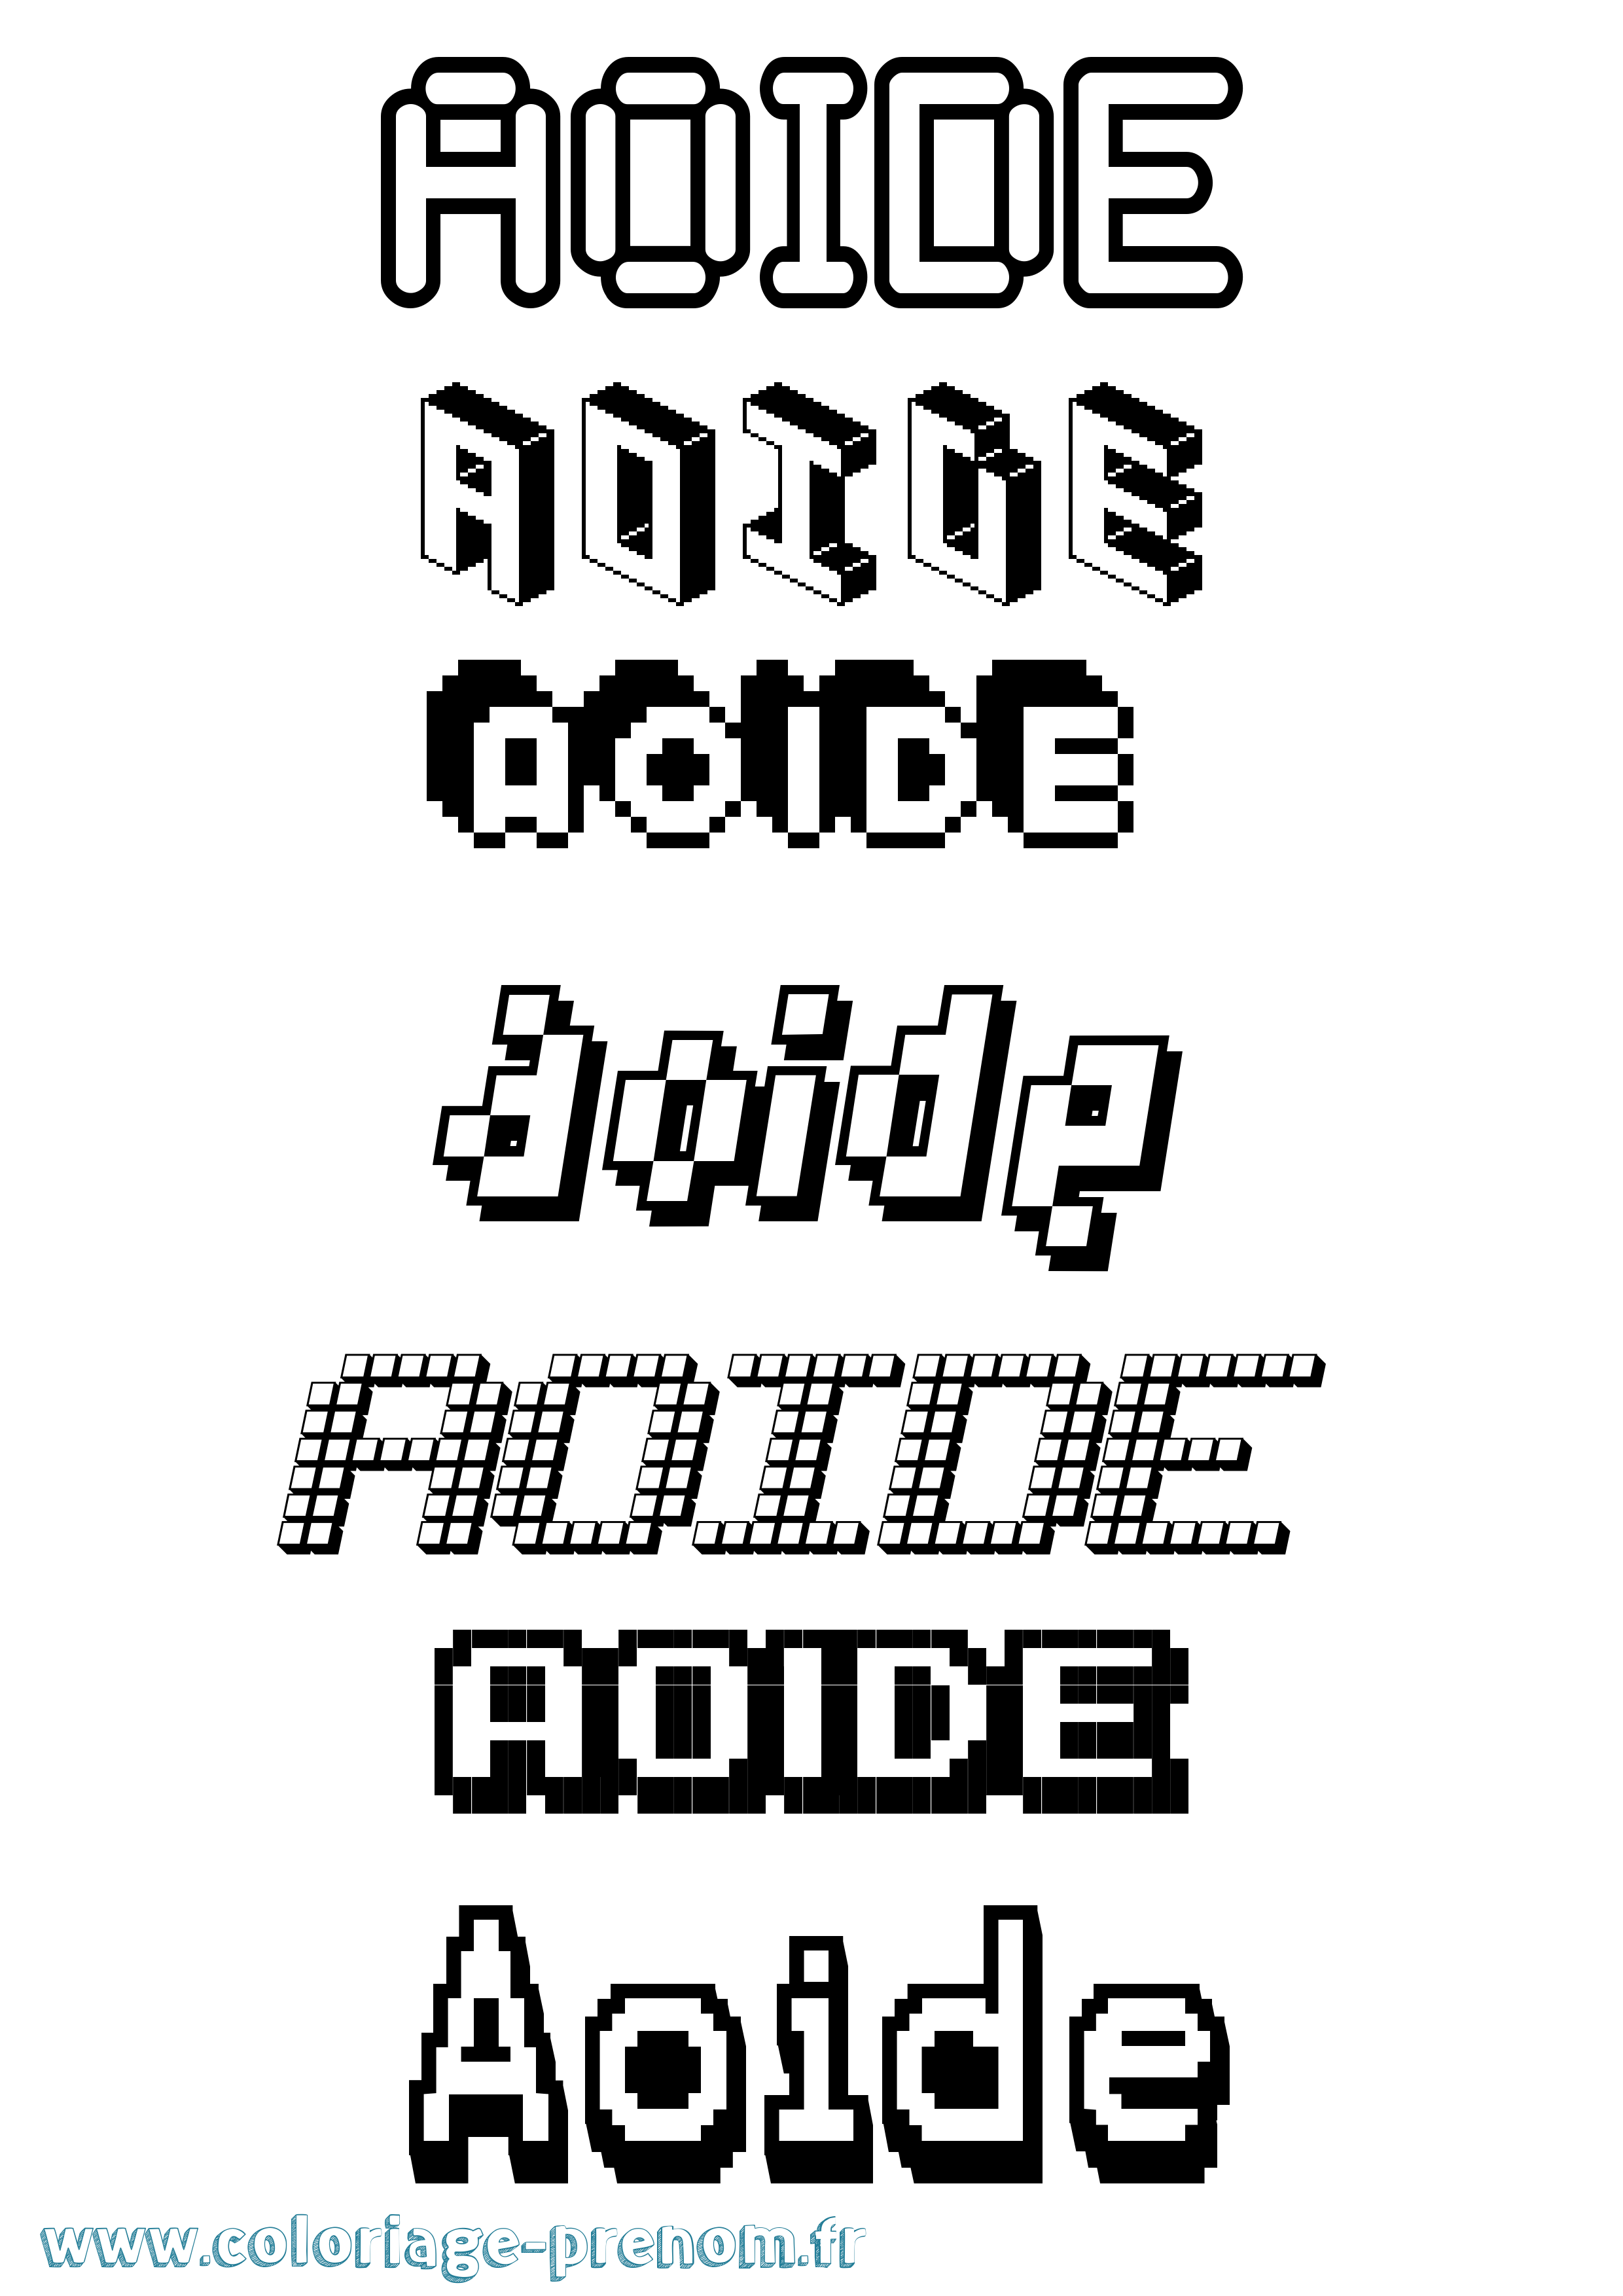 Coloriage prénom Aoide Pixel